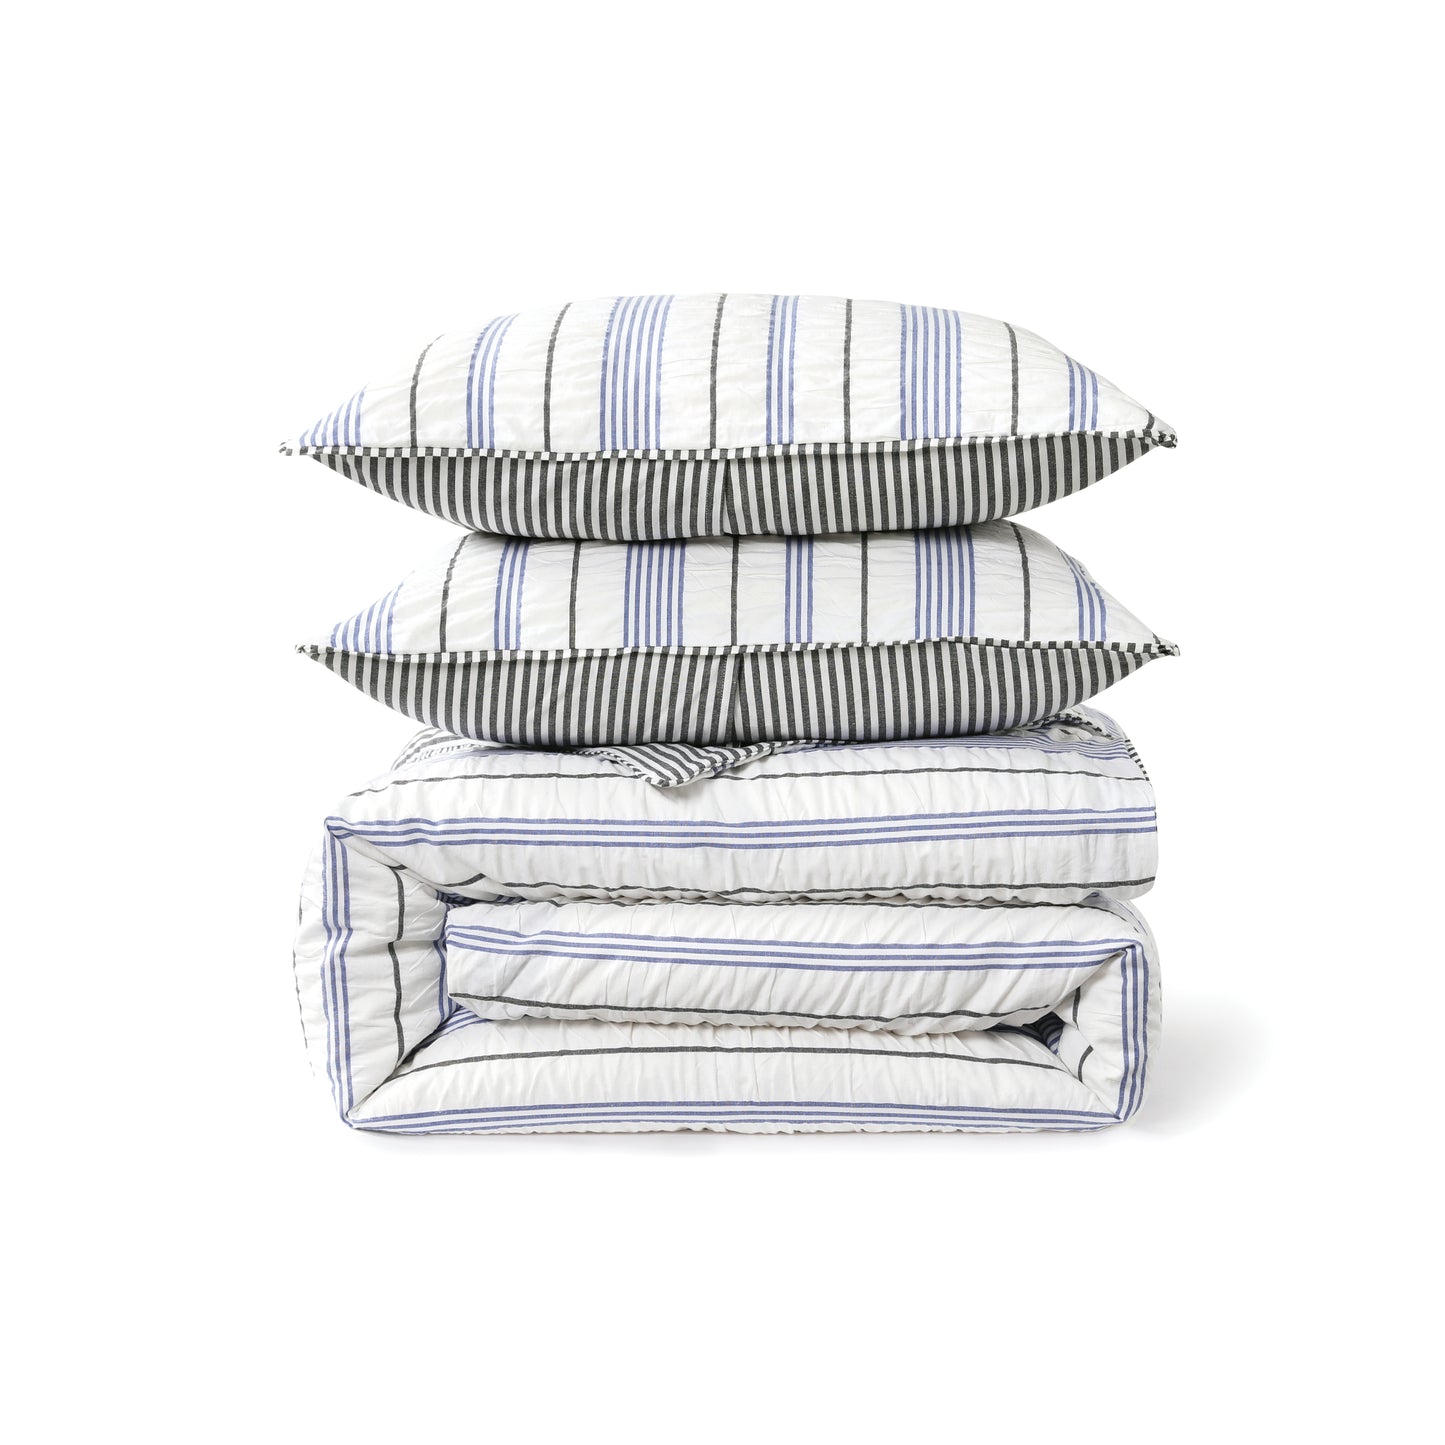 DKNY Seersucker Stripe Comforter Collection Set